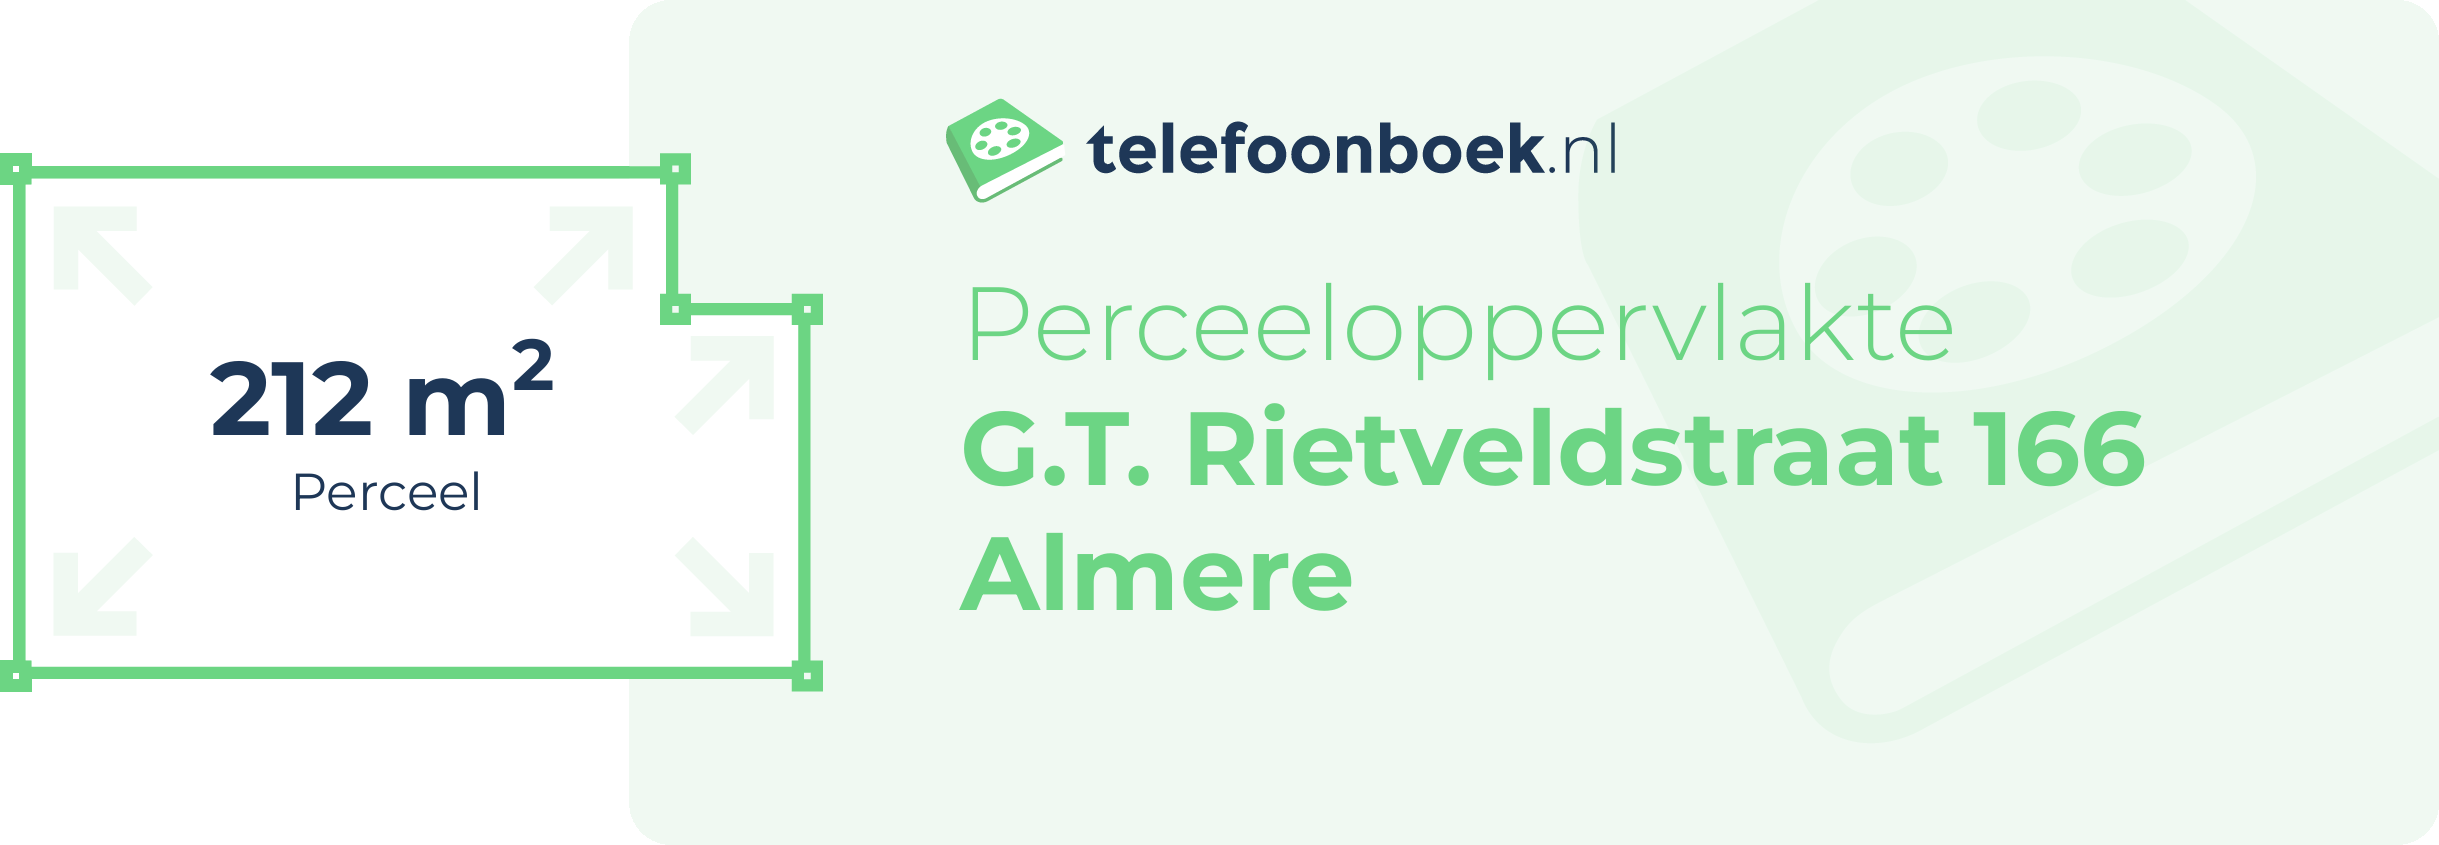 Perceeloppervlakte G.T. Rietveldstraat 166 Almere